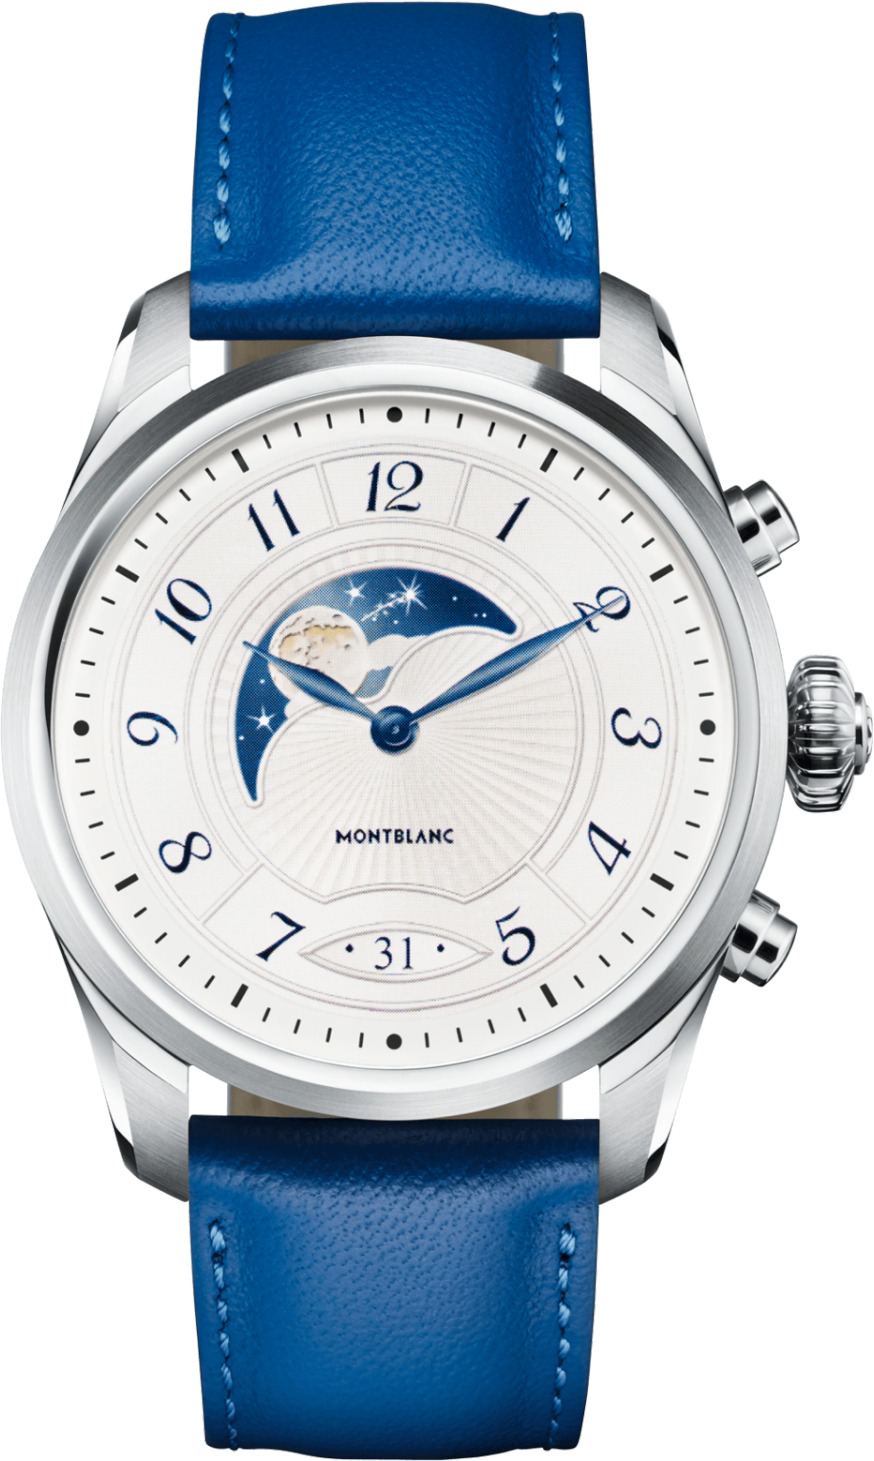 Đồng hồ thông minh - Smart watch Montblanc Summit 2 119722